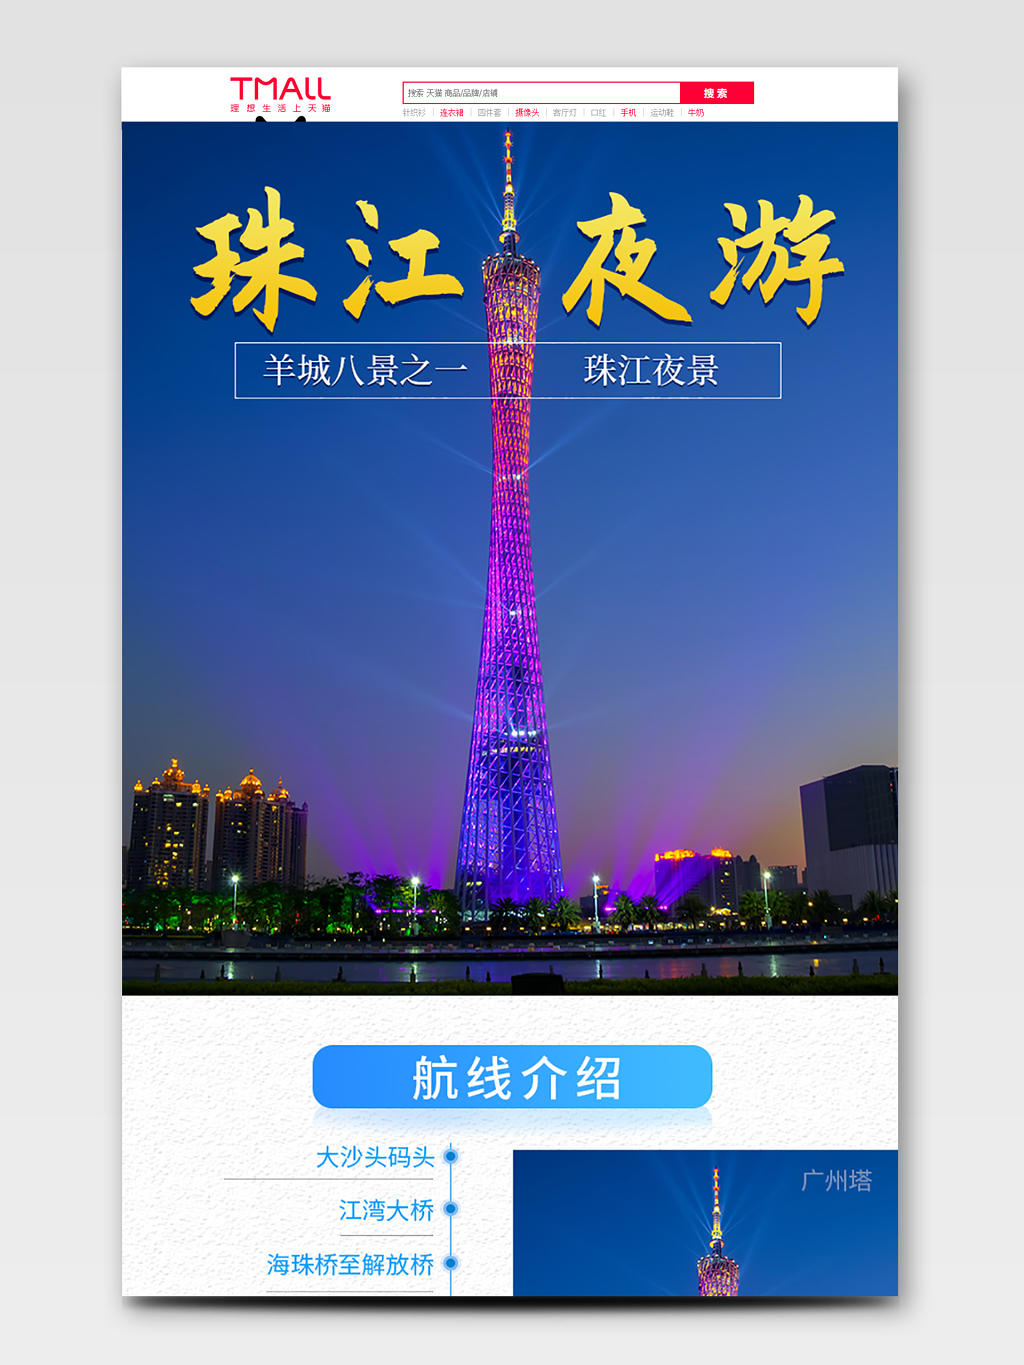 深蓝色风格羊城八景之一珠江夜游旅游产品详情页模板